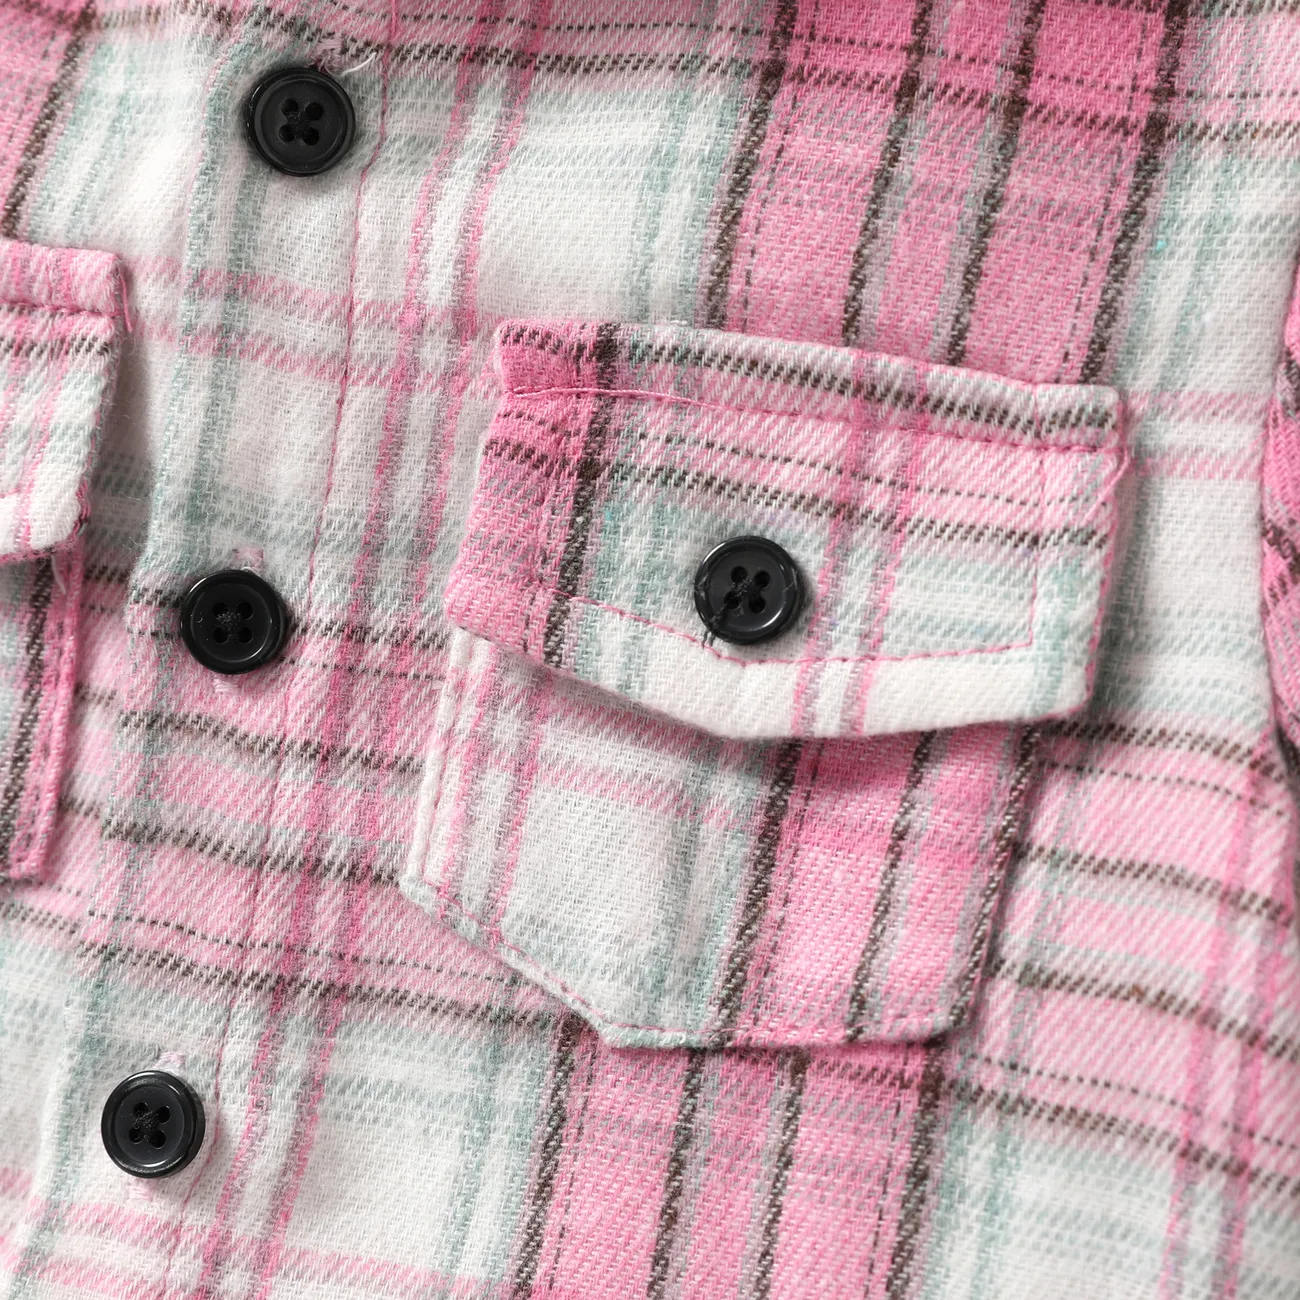 Baby/Toddler Boy 2pcs Plaid Print Hooded Shirt and Shorts Set Pink big image 1